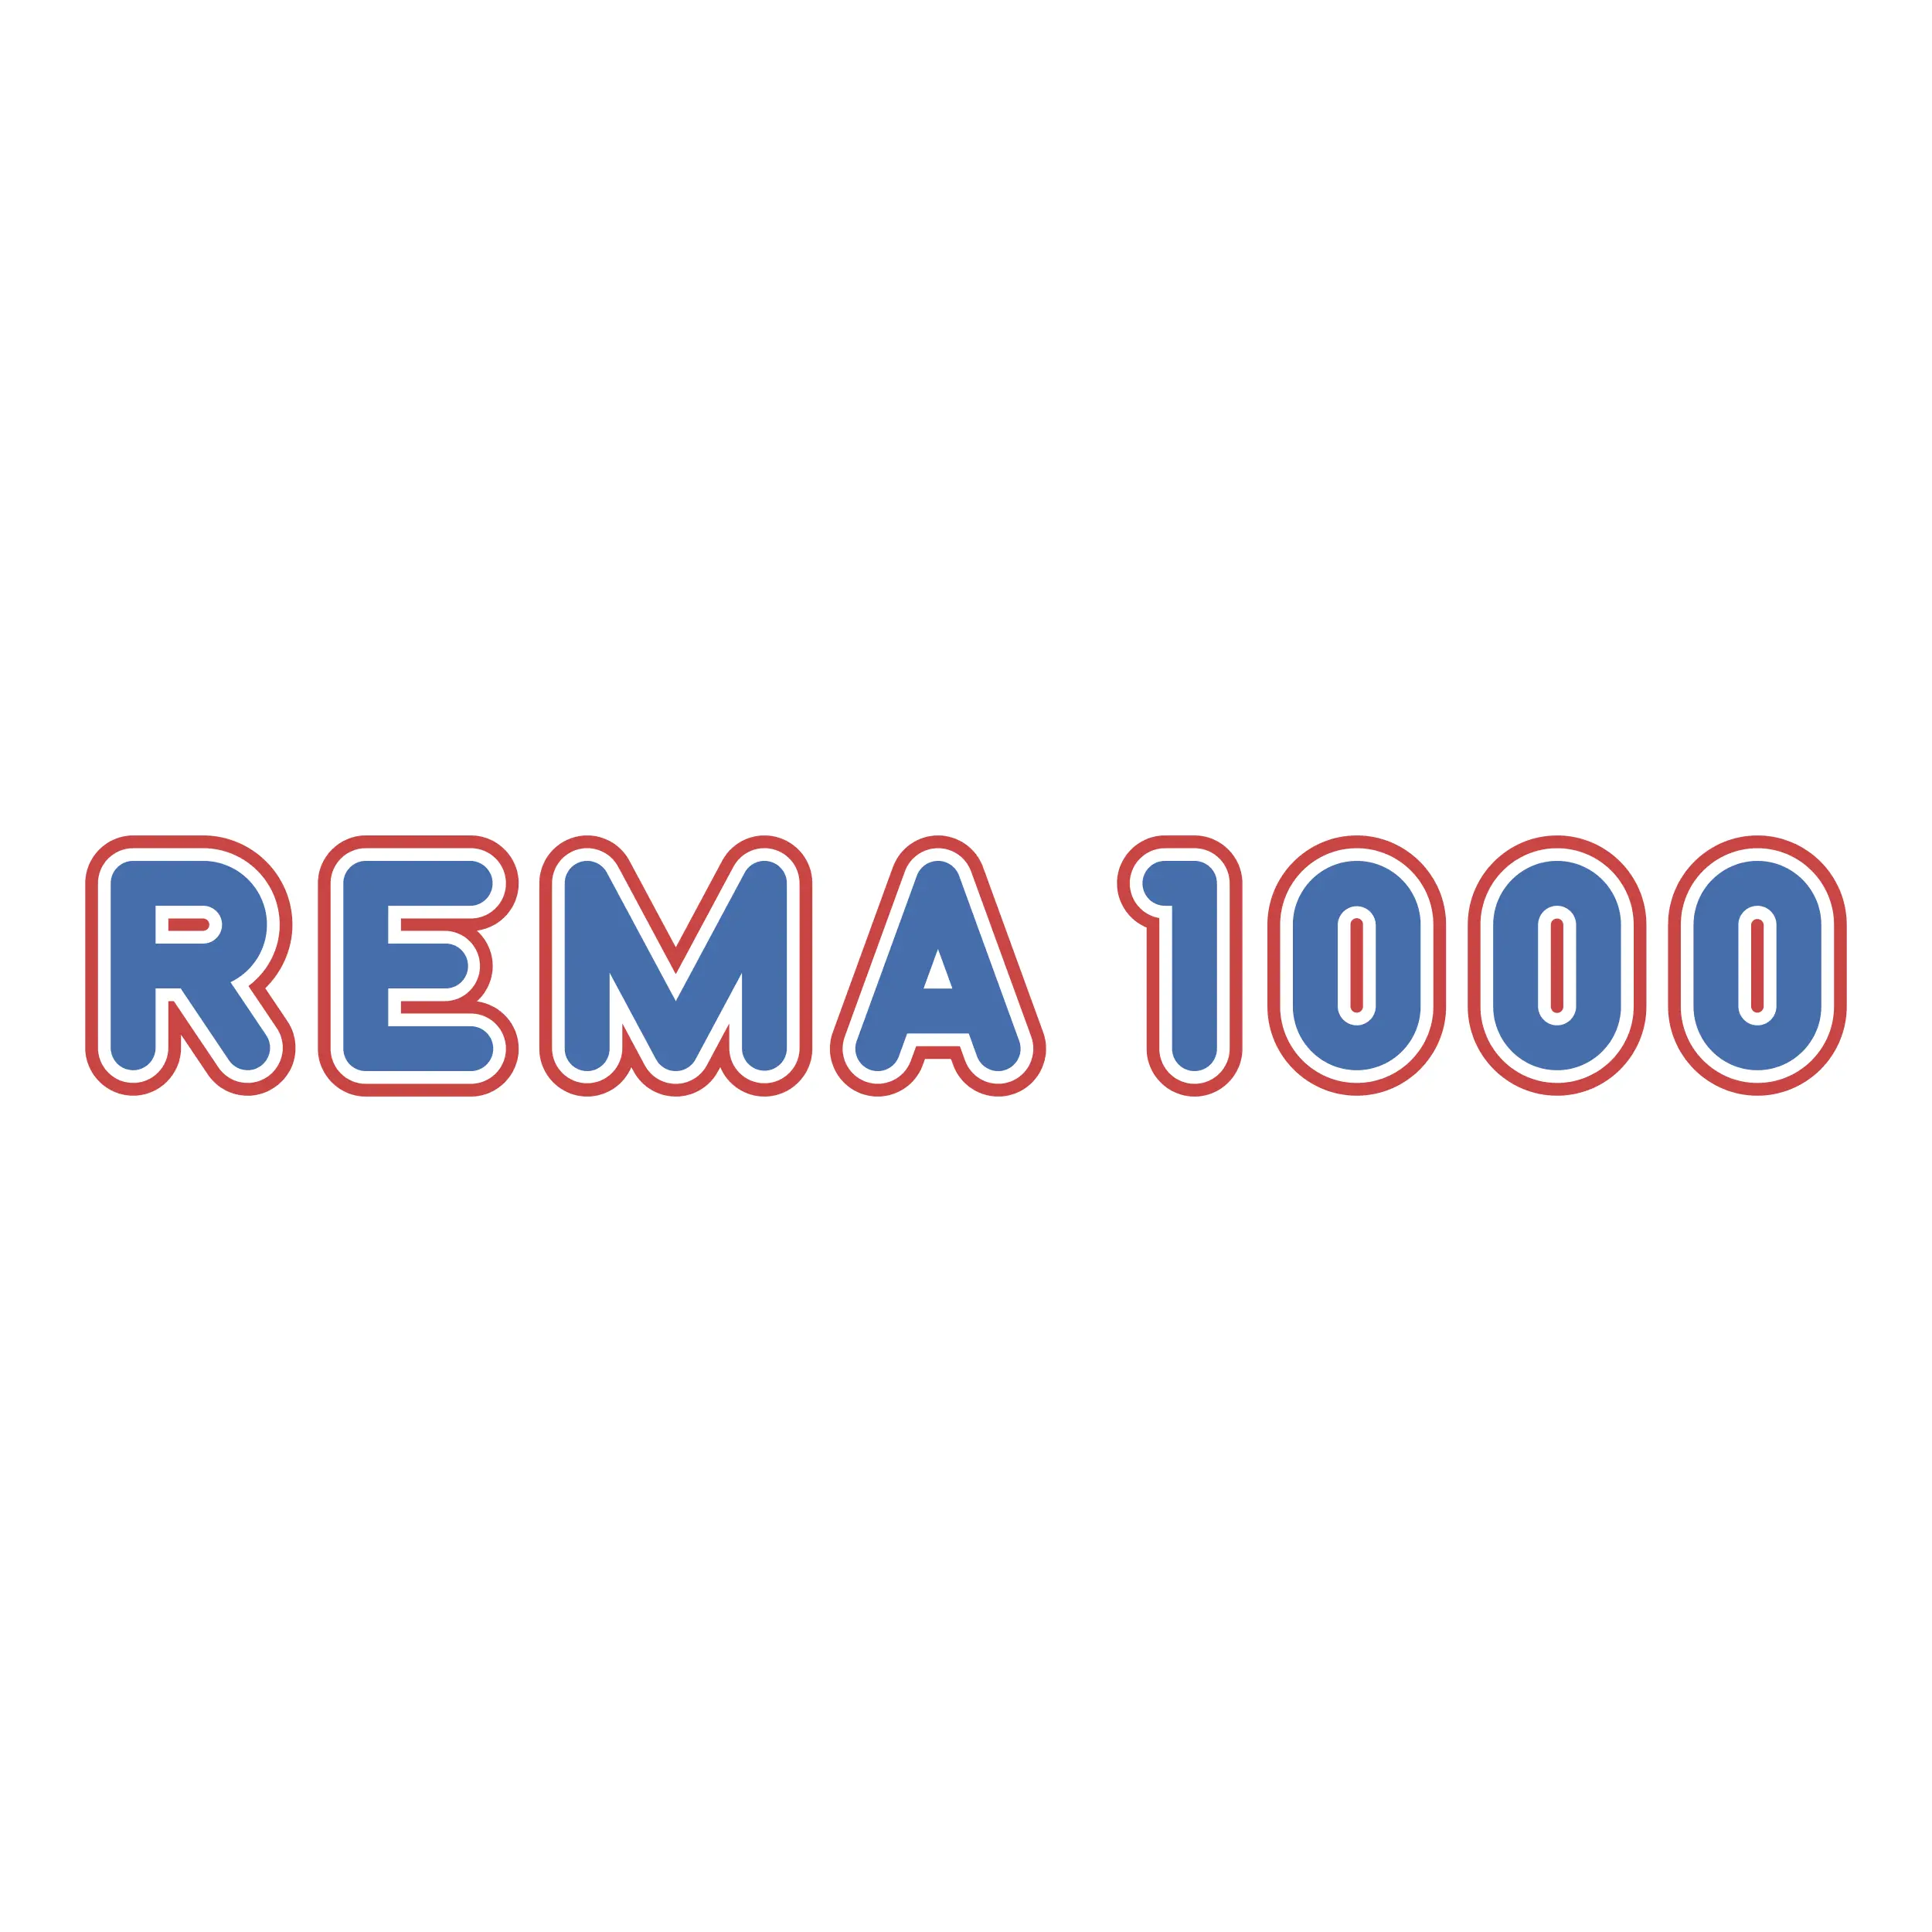 Rema 1000